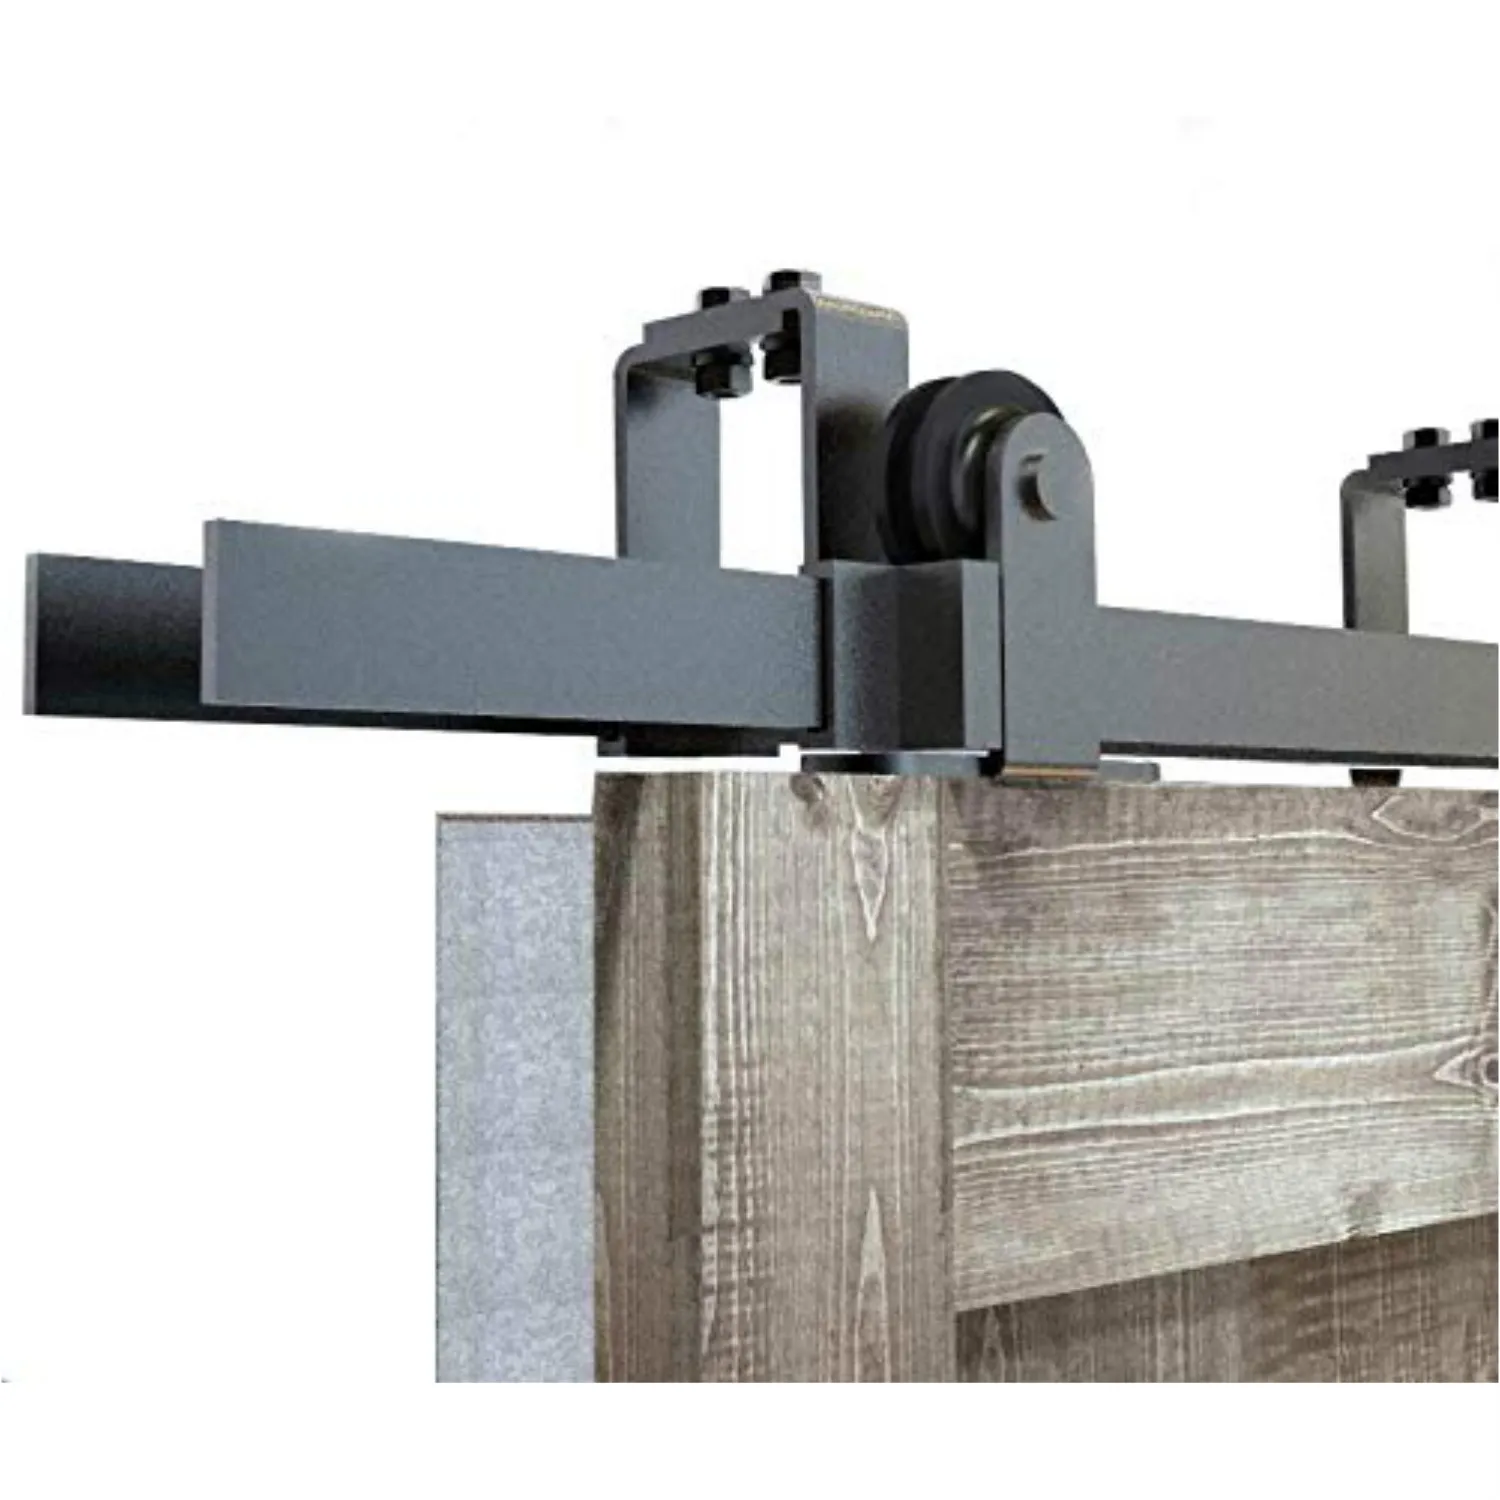 5-8FT contournement coulissant grange double porte en bois matériel montage supérieur rustique noir kit de rouleau de porte de grange coulissante pour plafond bas nouveau design